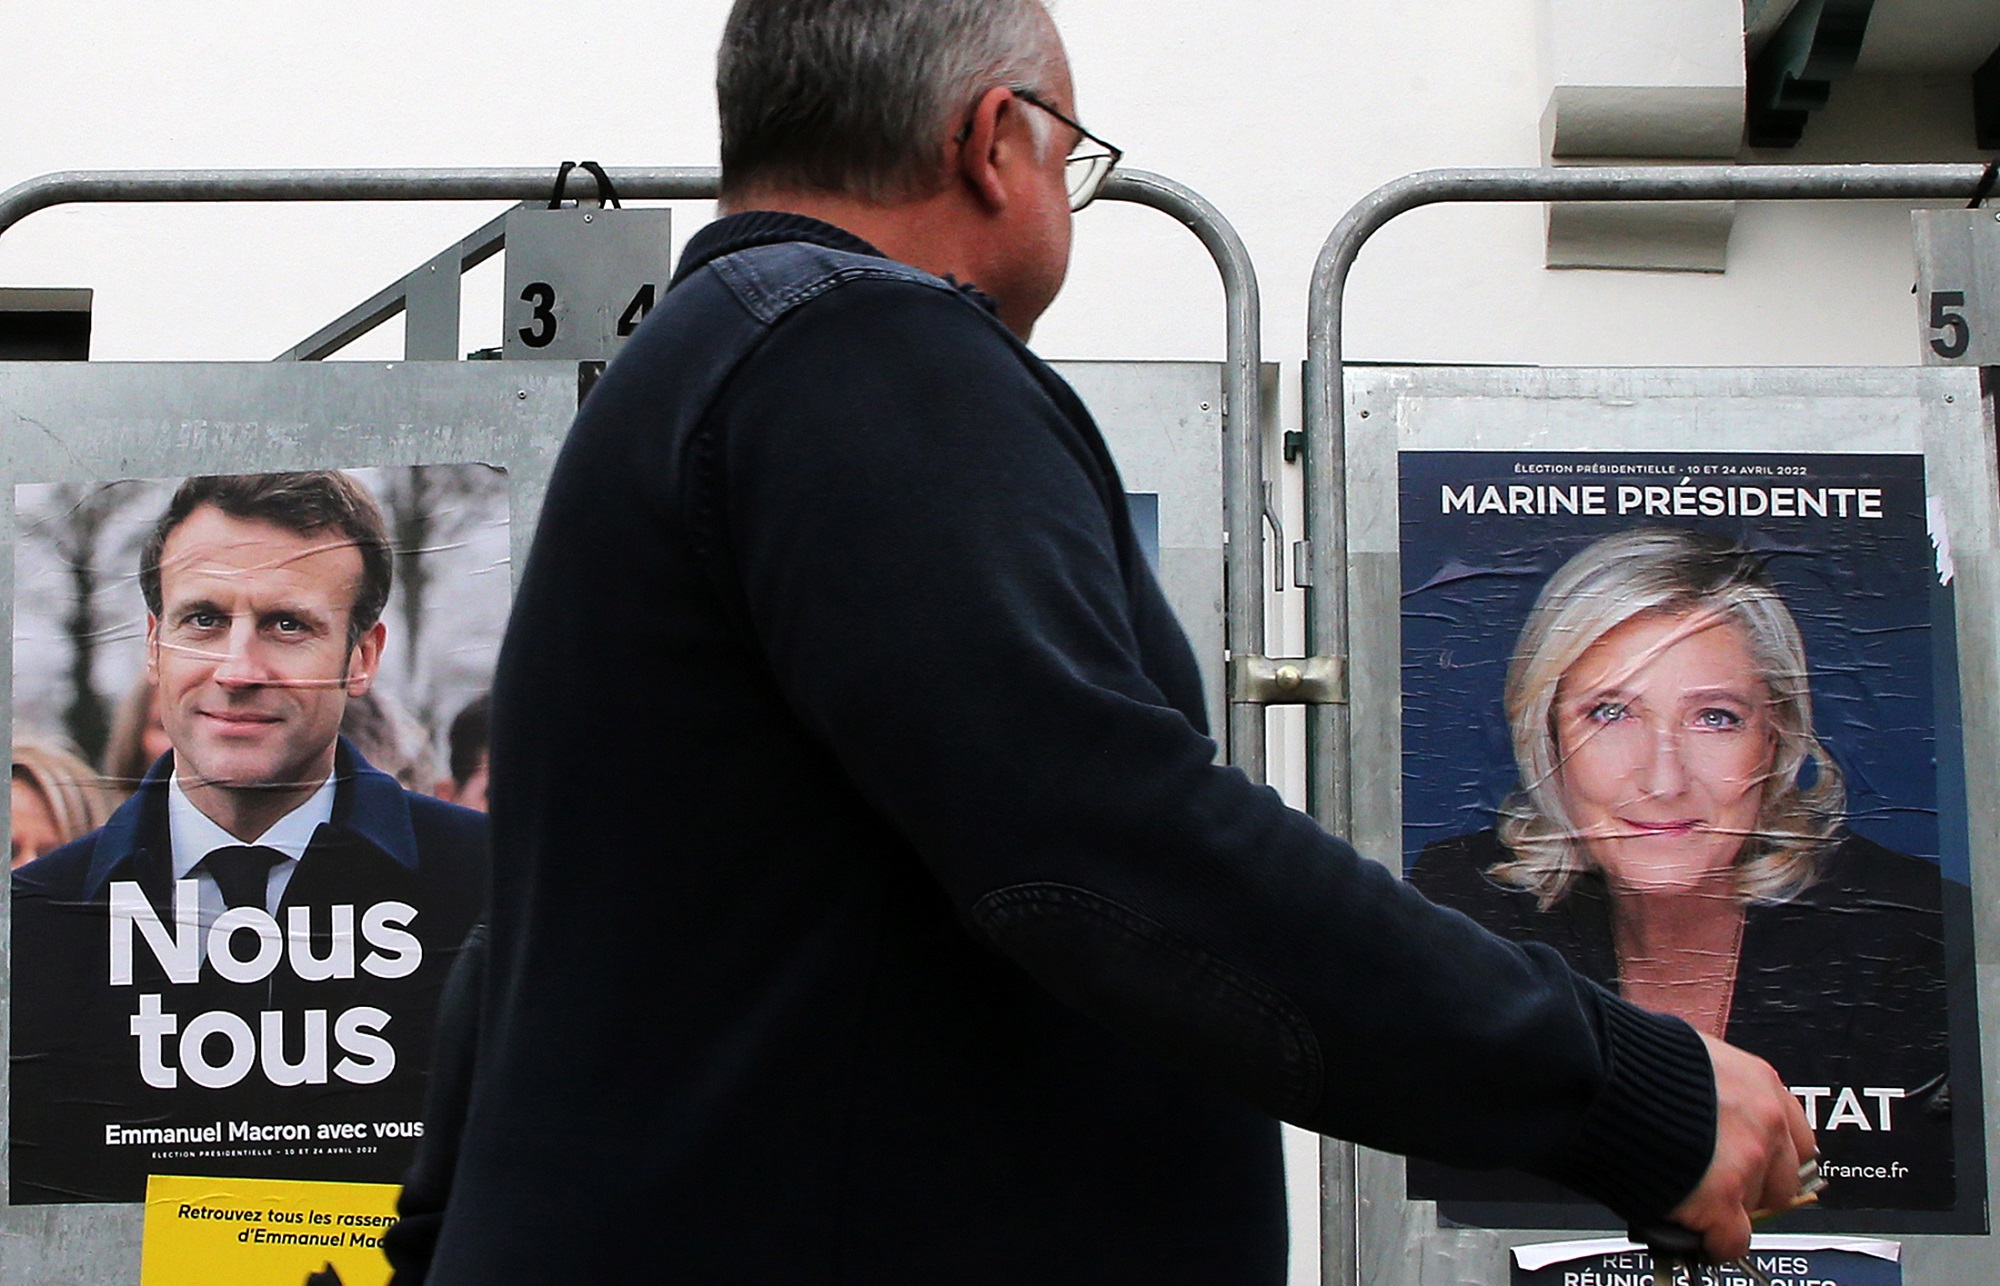 Γαλλικές εκλογές: Προτροπές στους ψηφοφόρους από του υπουργούς εξωτερικών της Γερμανίας και του Λουξεμβούργου για ενότητα και φραγμό στην Μ. Λεπέν